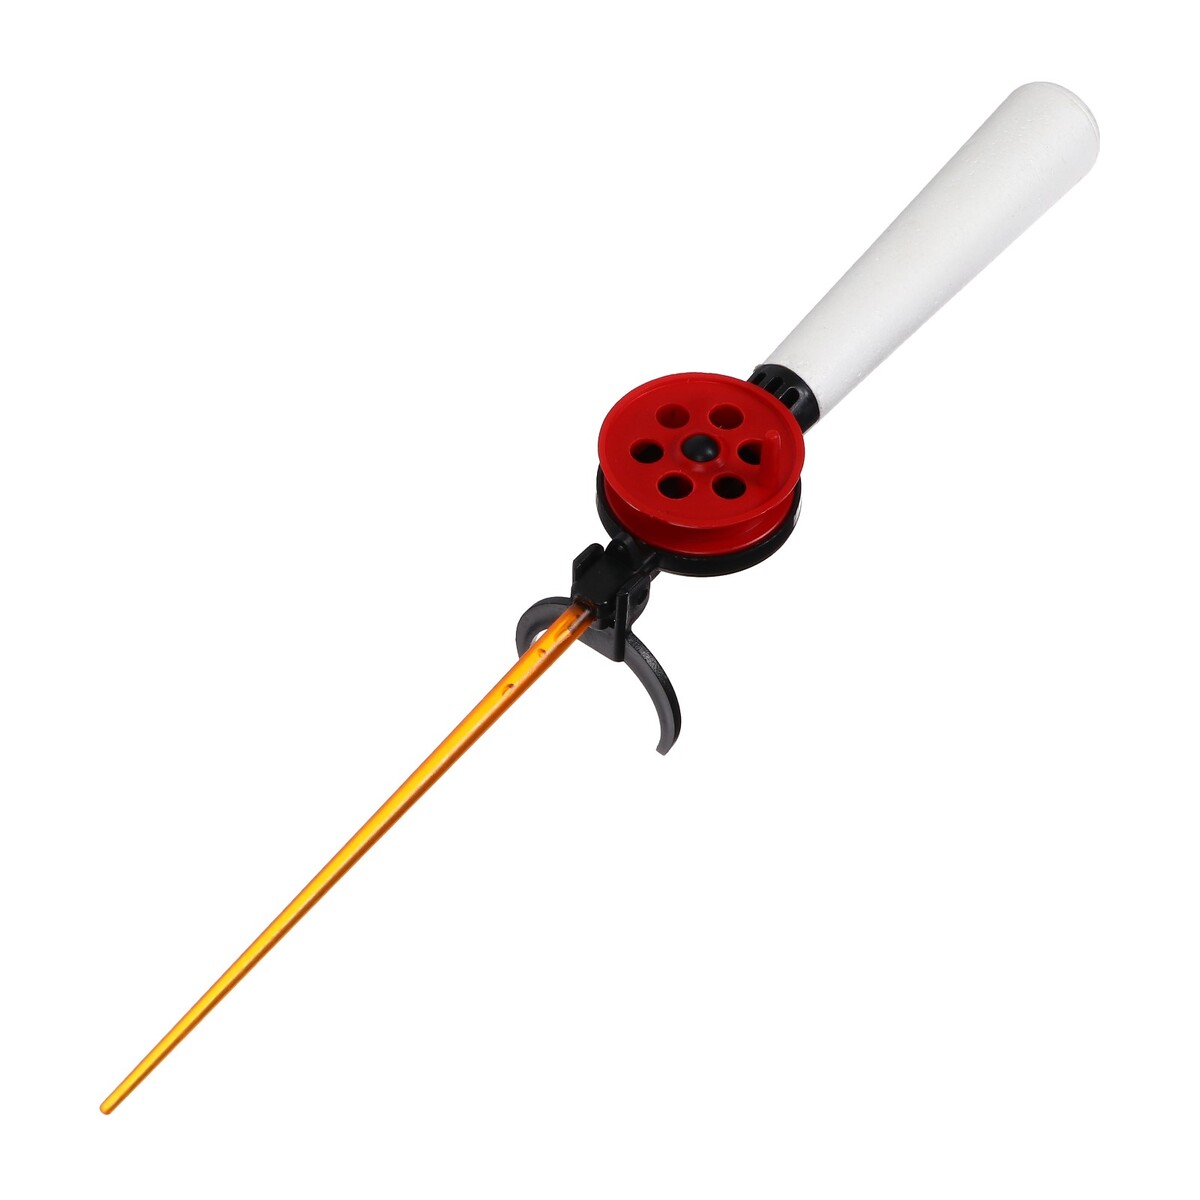 Удочка зимняя, ручка пенопласт длиной 130 мм, hfb-9b удочка зимняя ручка неопрен длина 42 см красный hbf 34 1